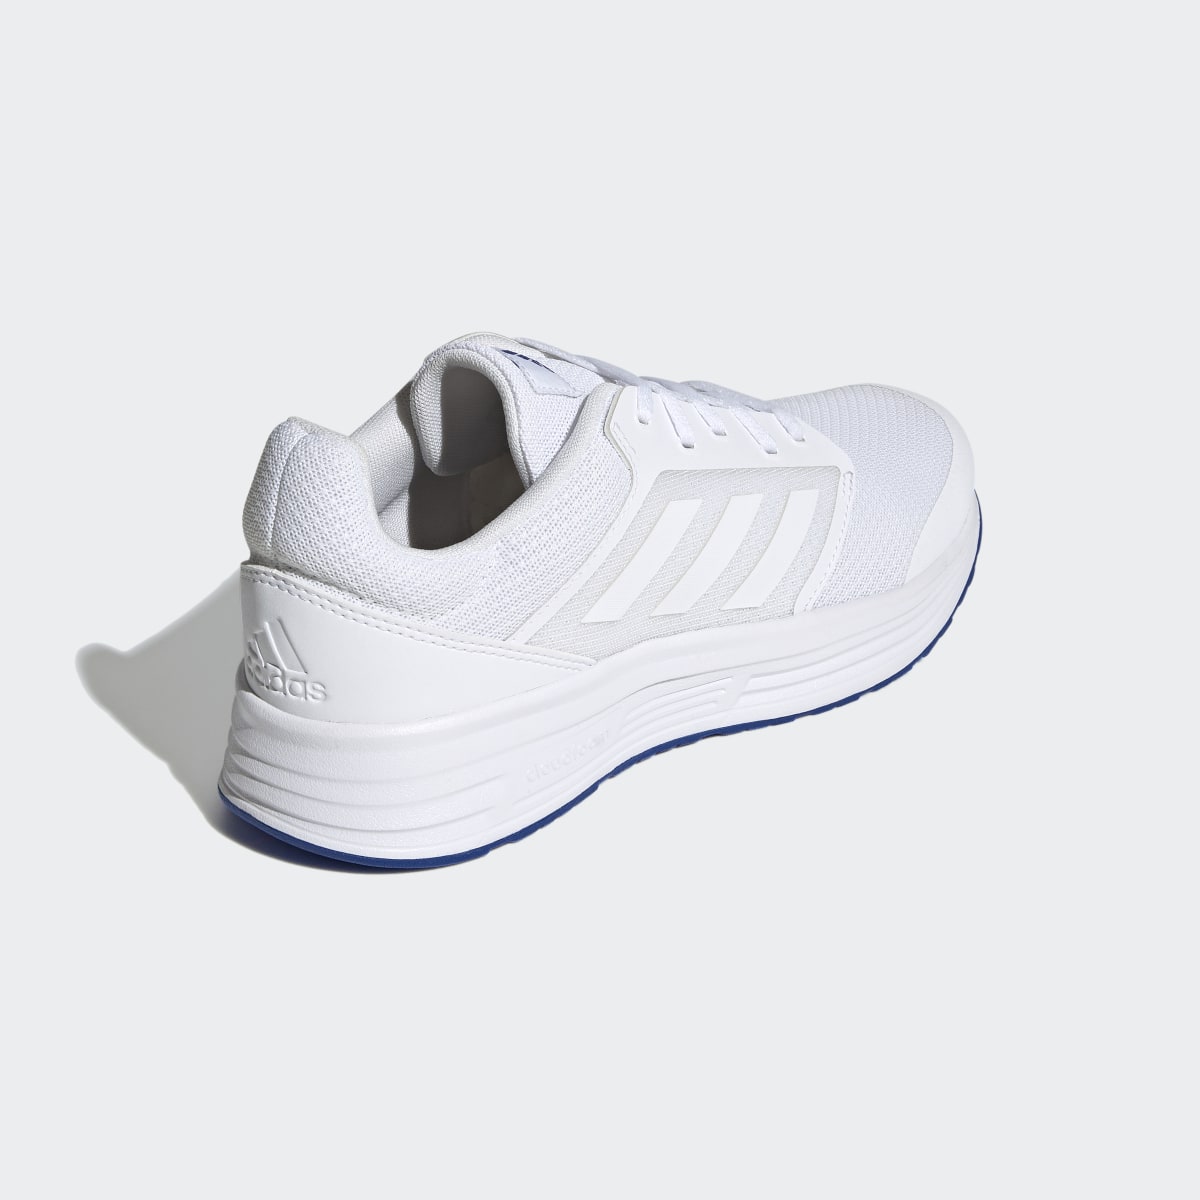 Adidas Galaxy 5 Ayakkabı. 6